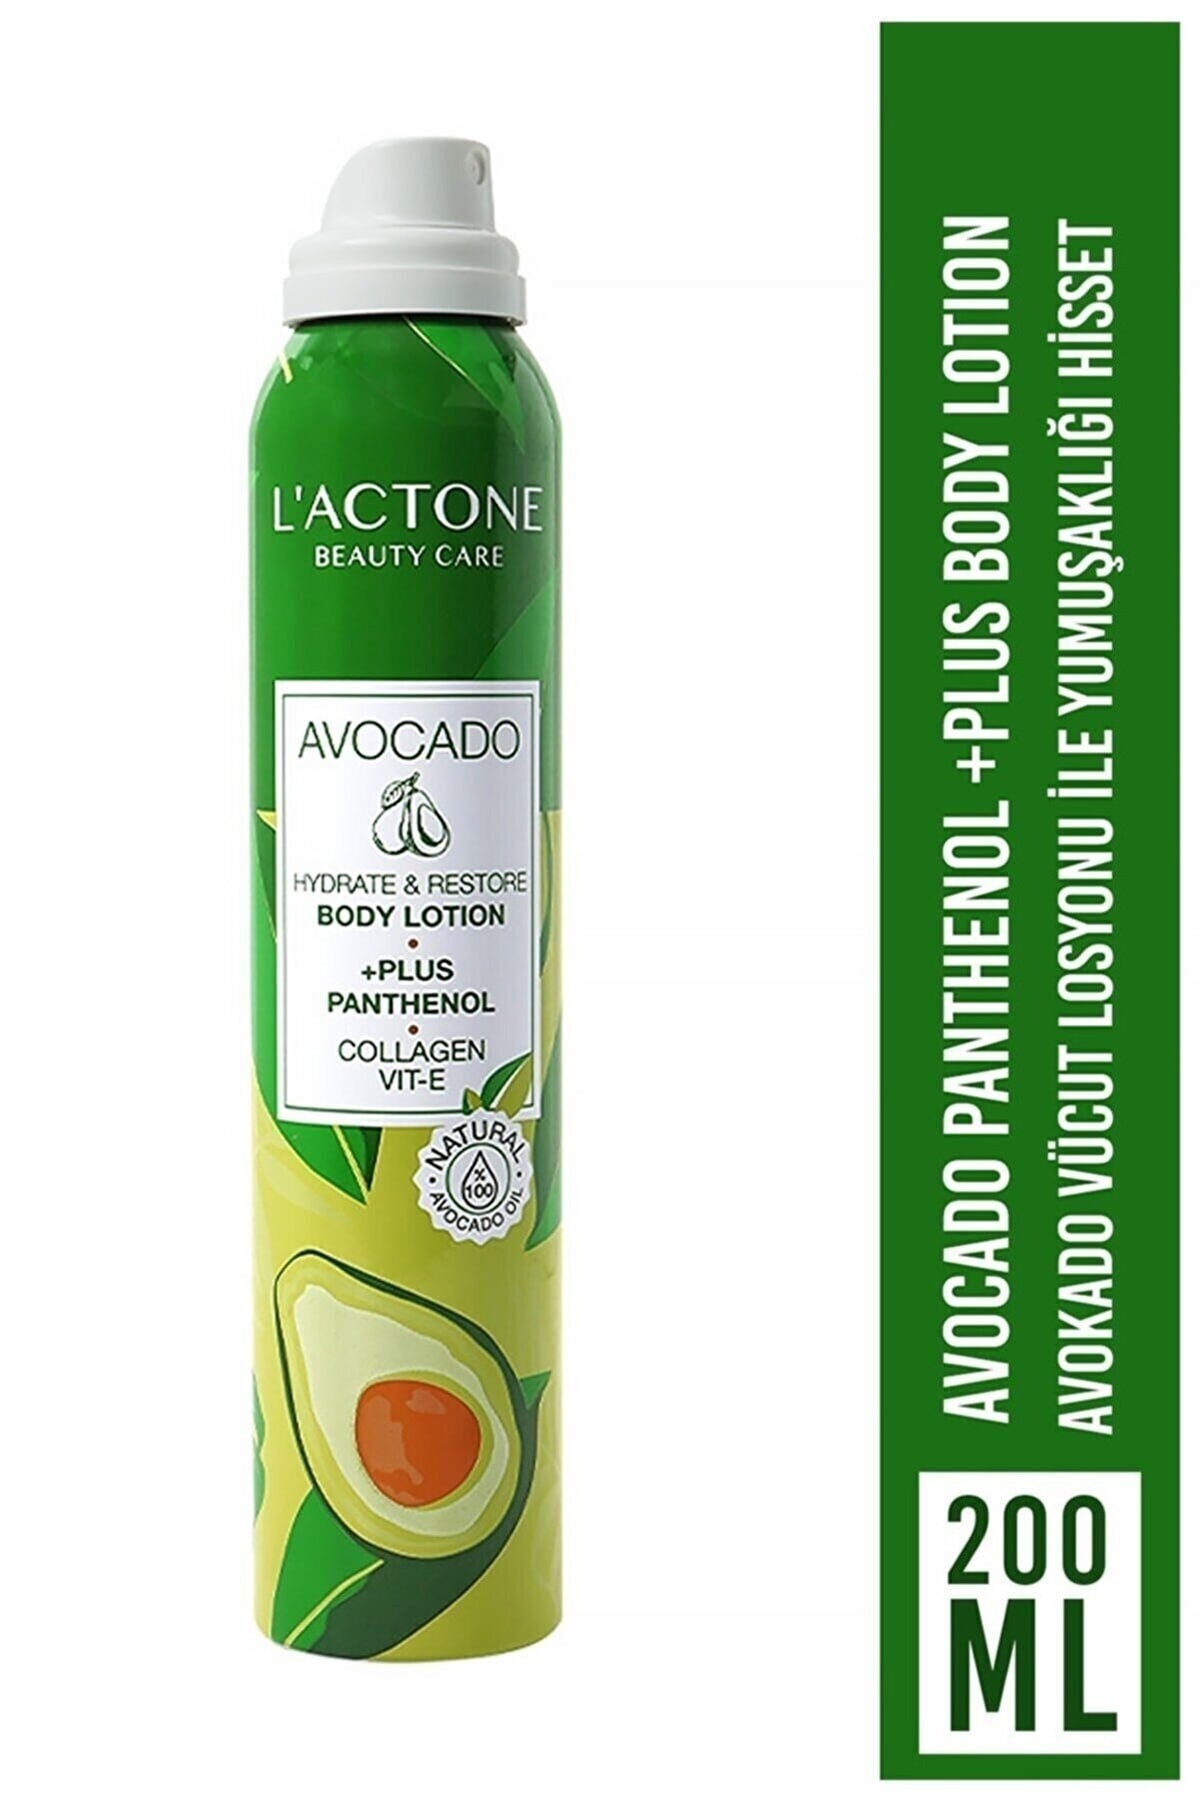 Avocado Panthenol Plus Body Lotion 200 ml